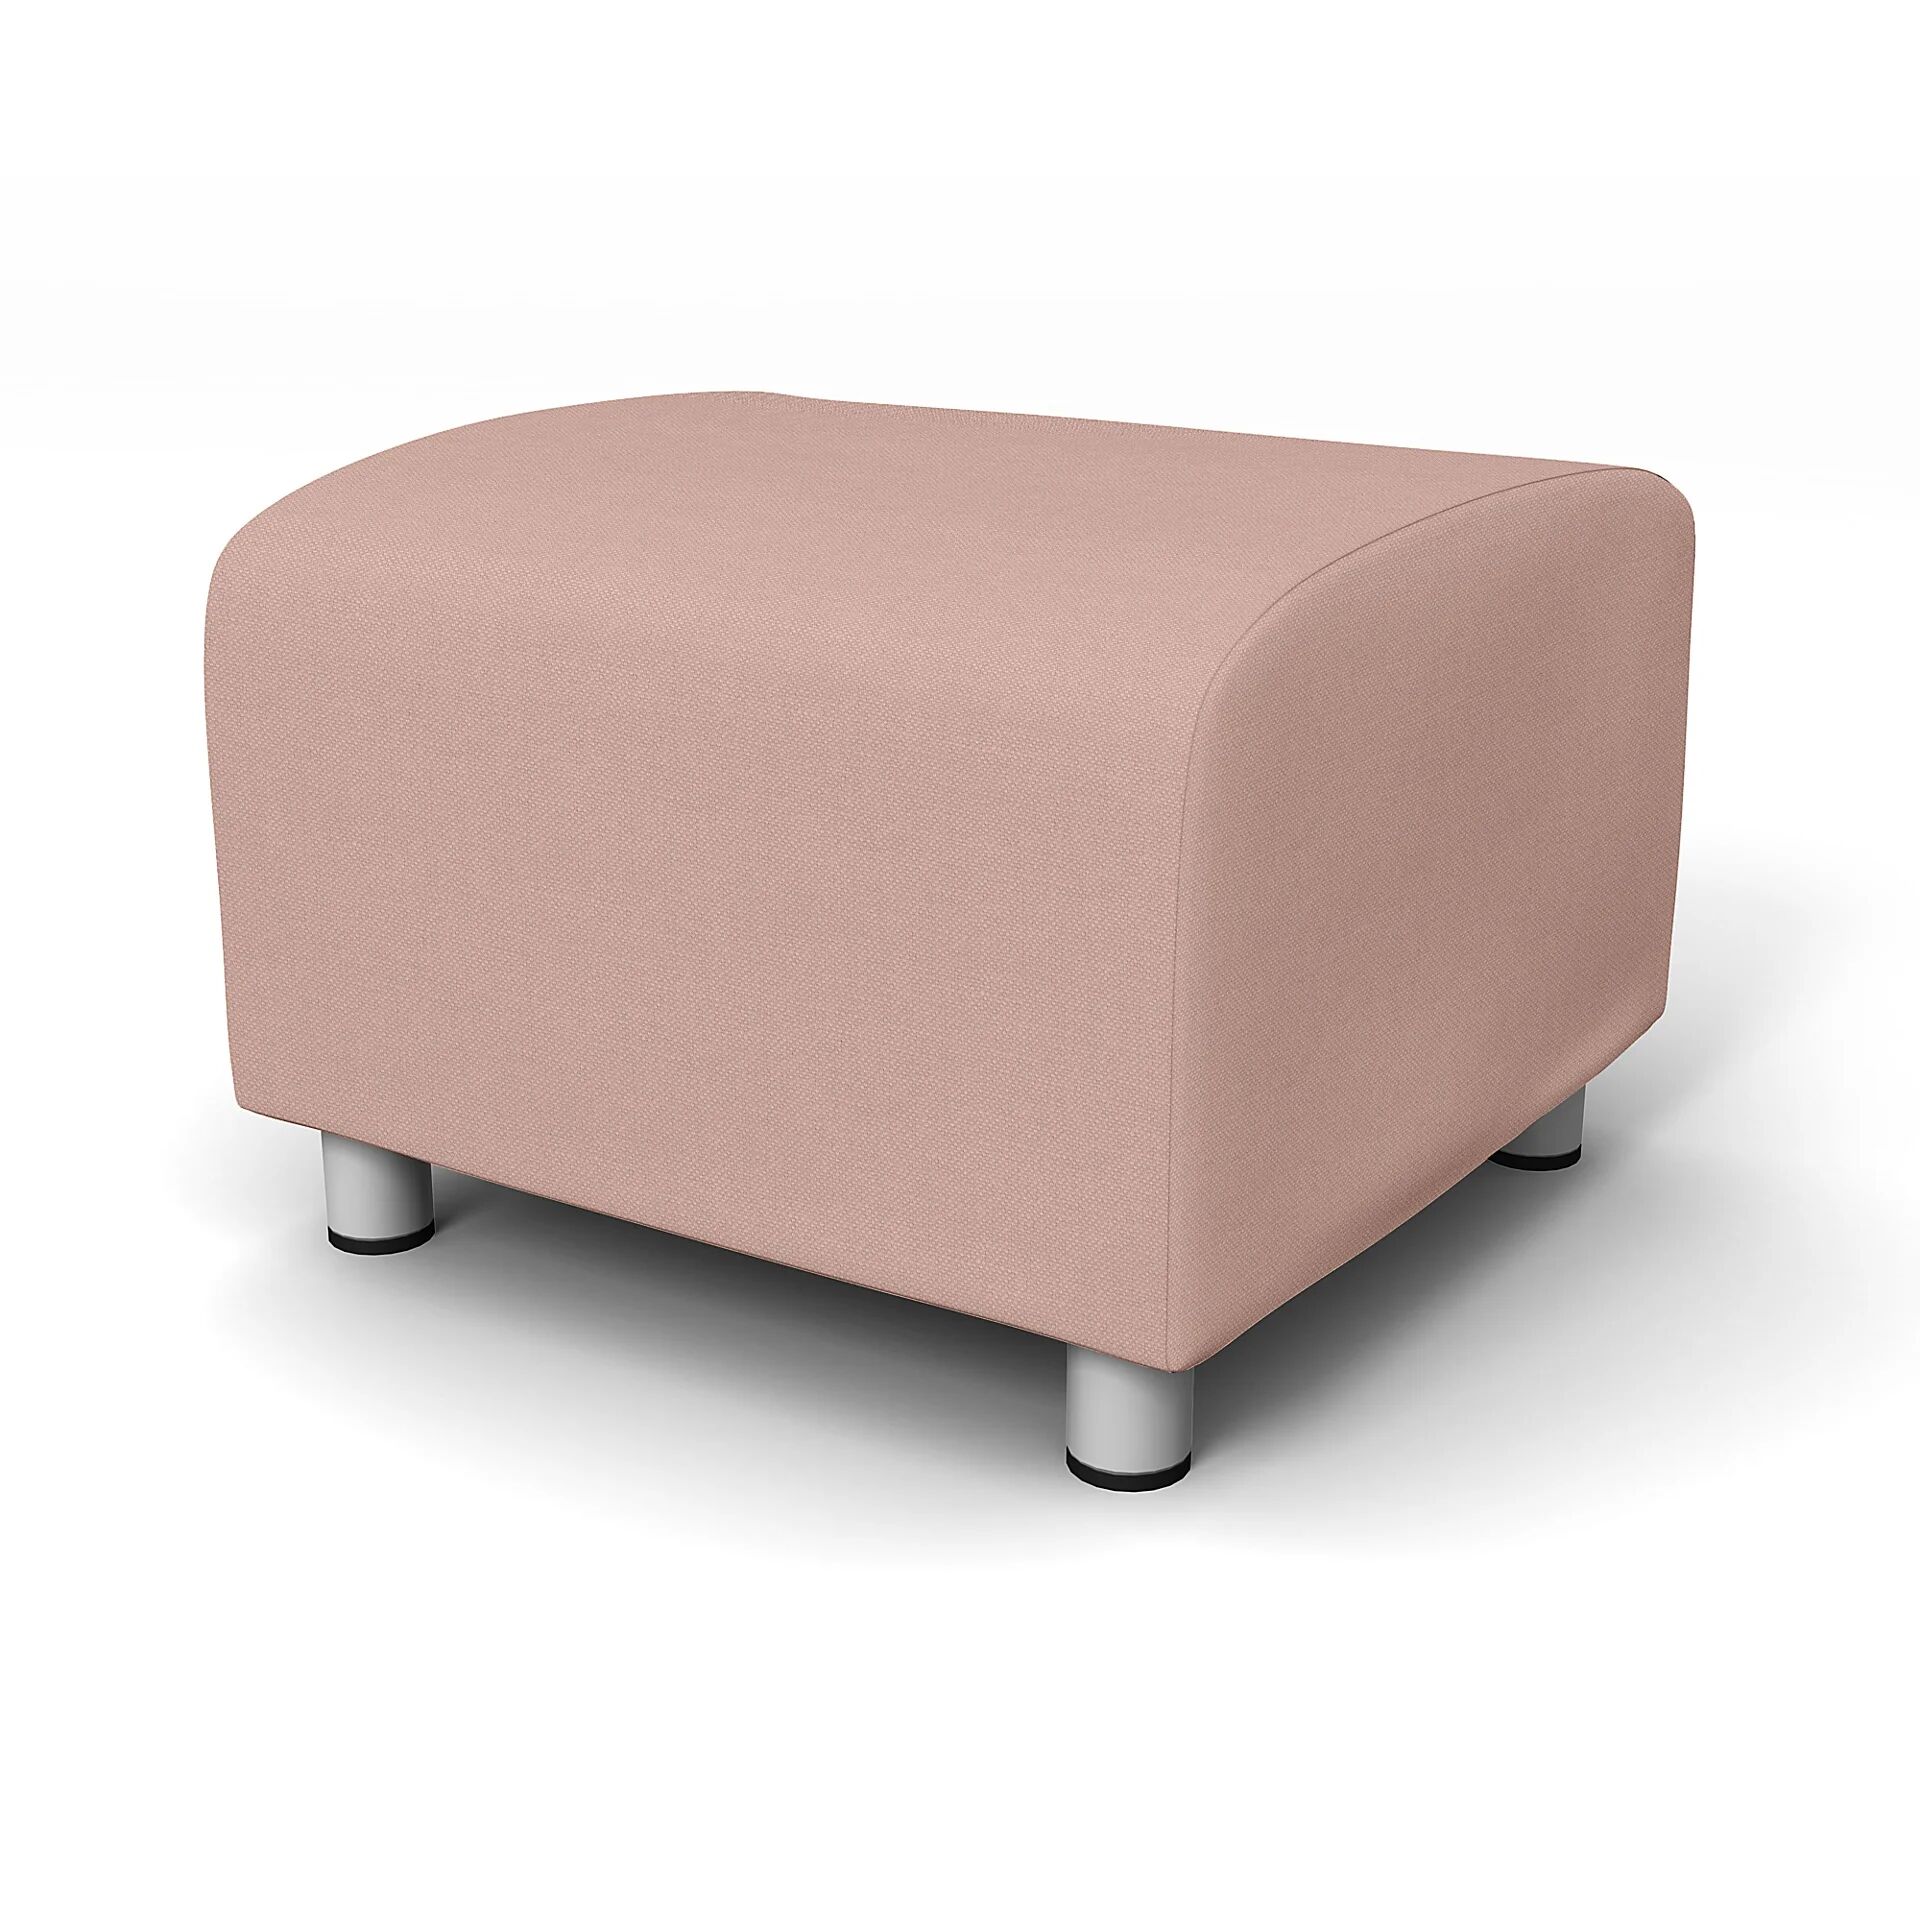 IKEA - Klippan Footstool Cover, Blush, Linen - Bemz